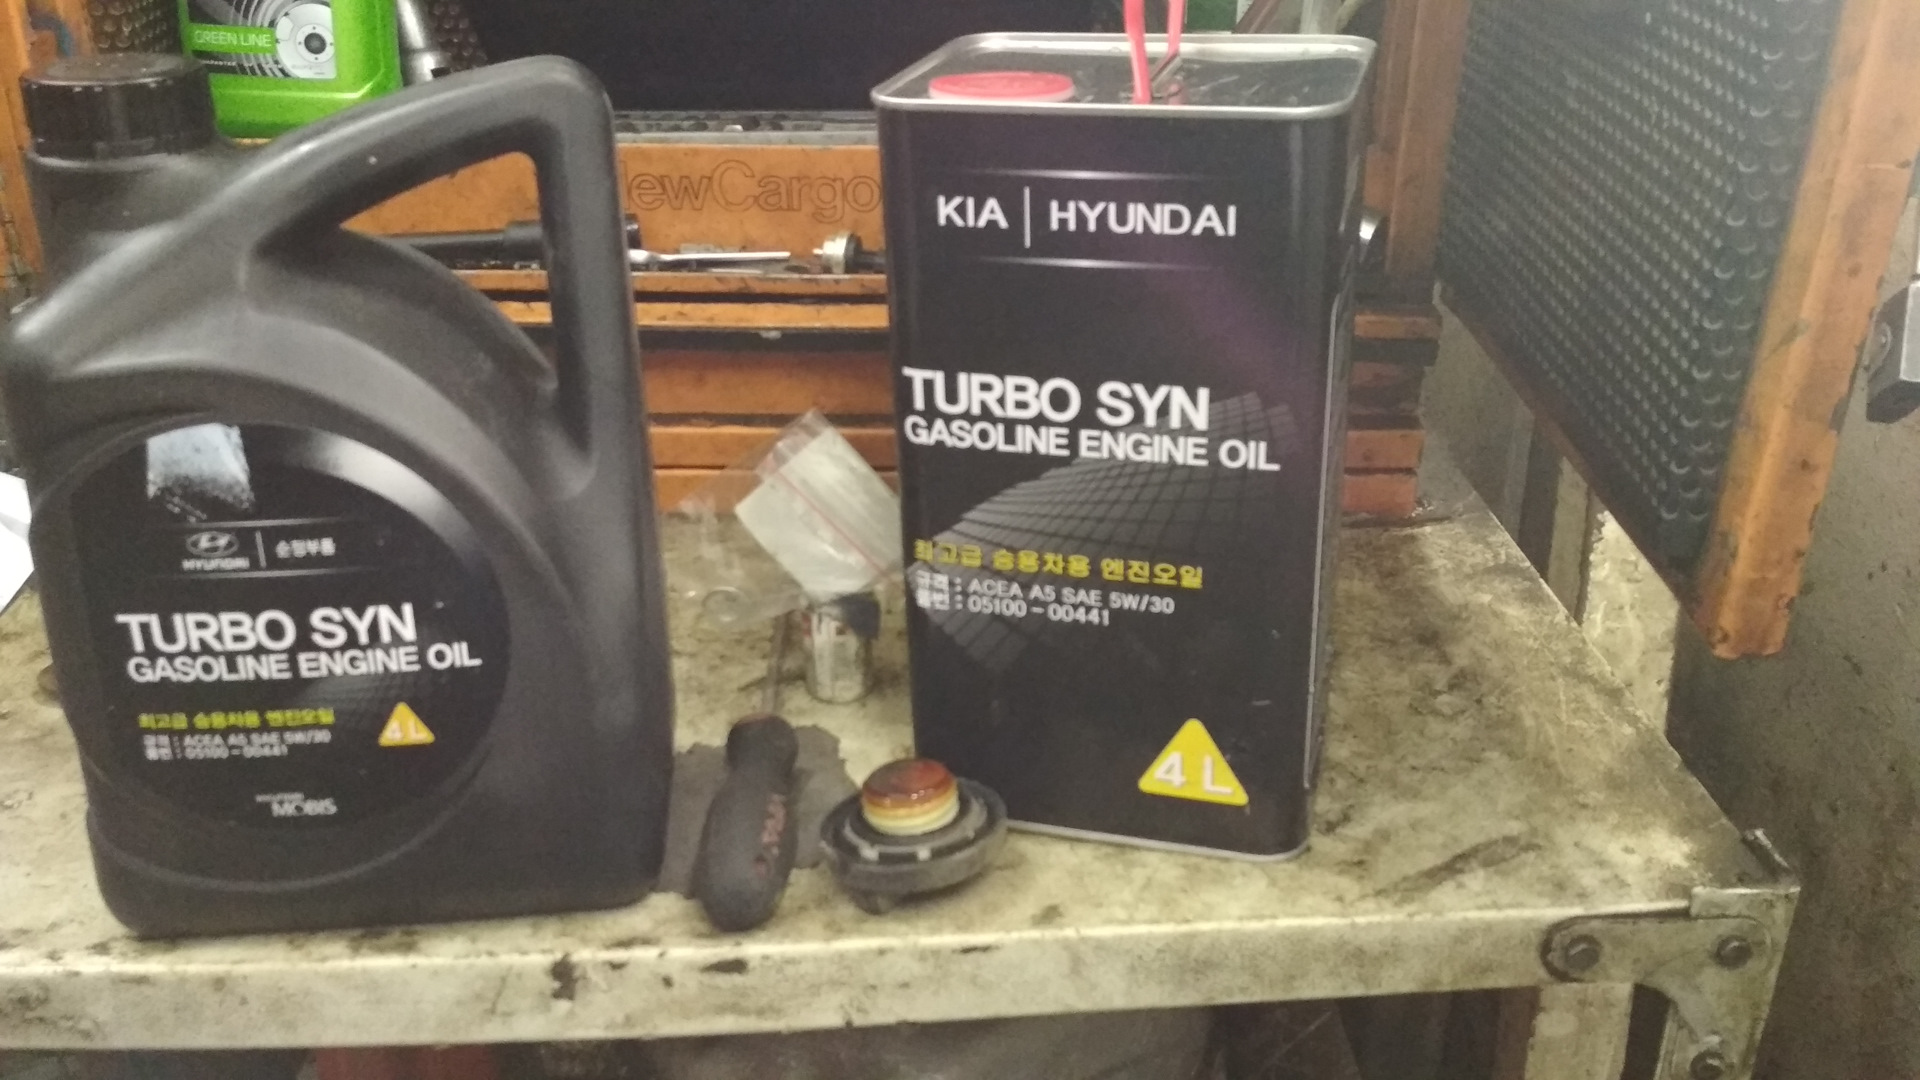 Масло hyundai как проверить. Hyundai Turbo syn 5w-30. Масло Hyundai 5w30 Turbo syn. Масло в двигатель Киа Рио 1.6 2013. Kia Rio 3 1.6 масло в двигатель.